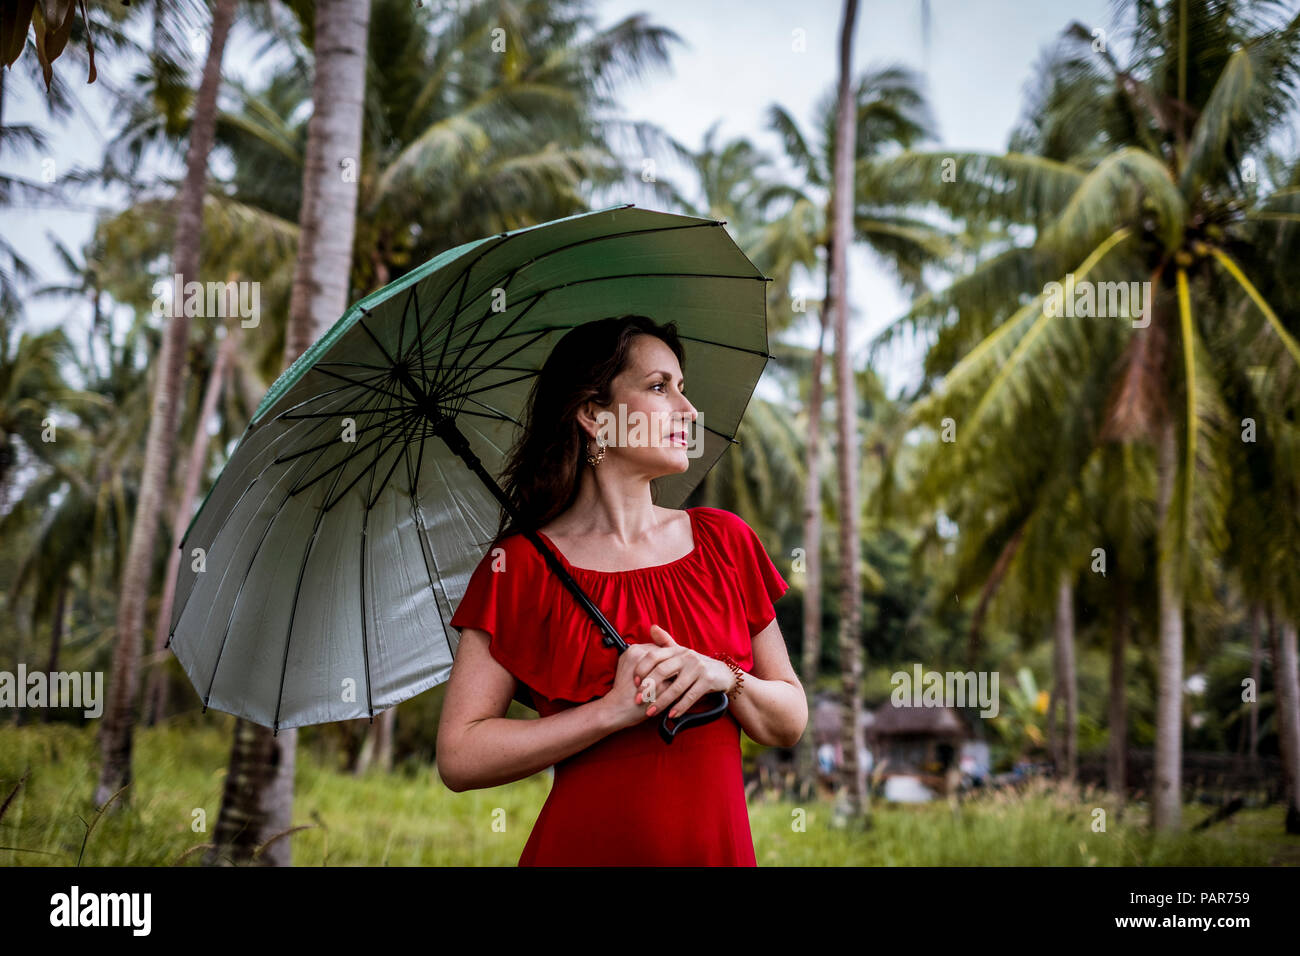 La Thaïlande, Koh Phangan, portrait de femme se promenant avec parapluie Banque D'Images